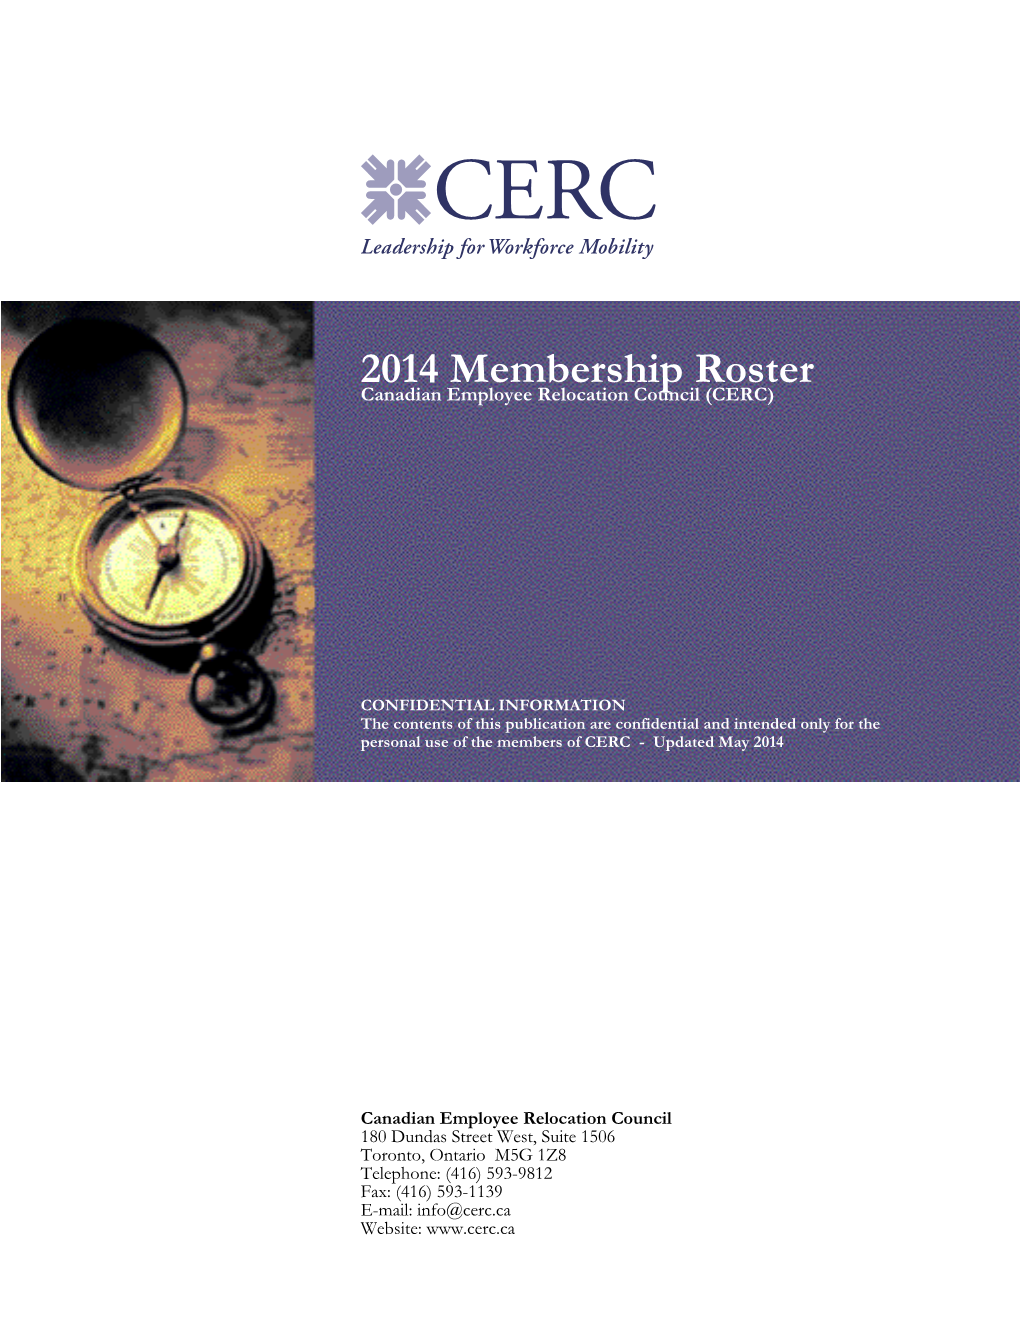 2008 Membership Roster